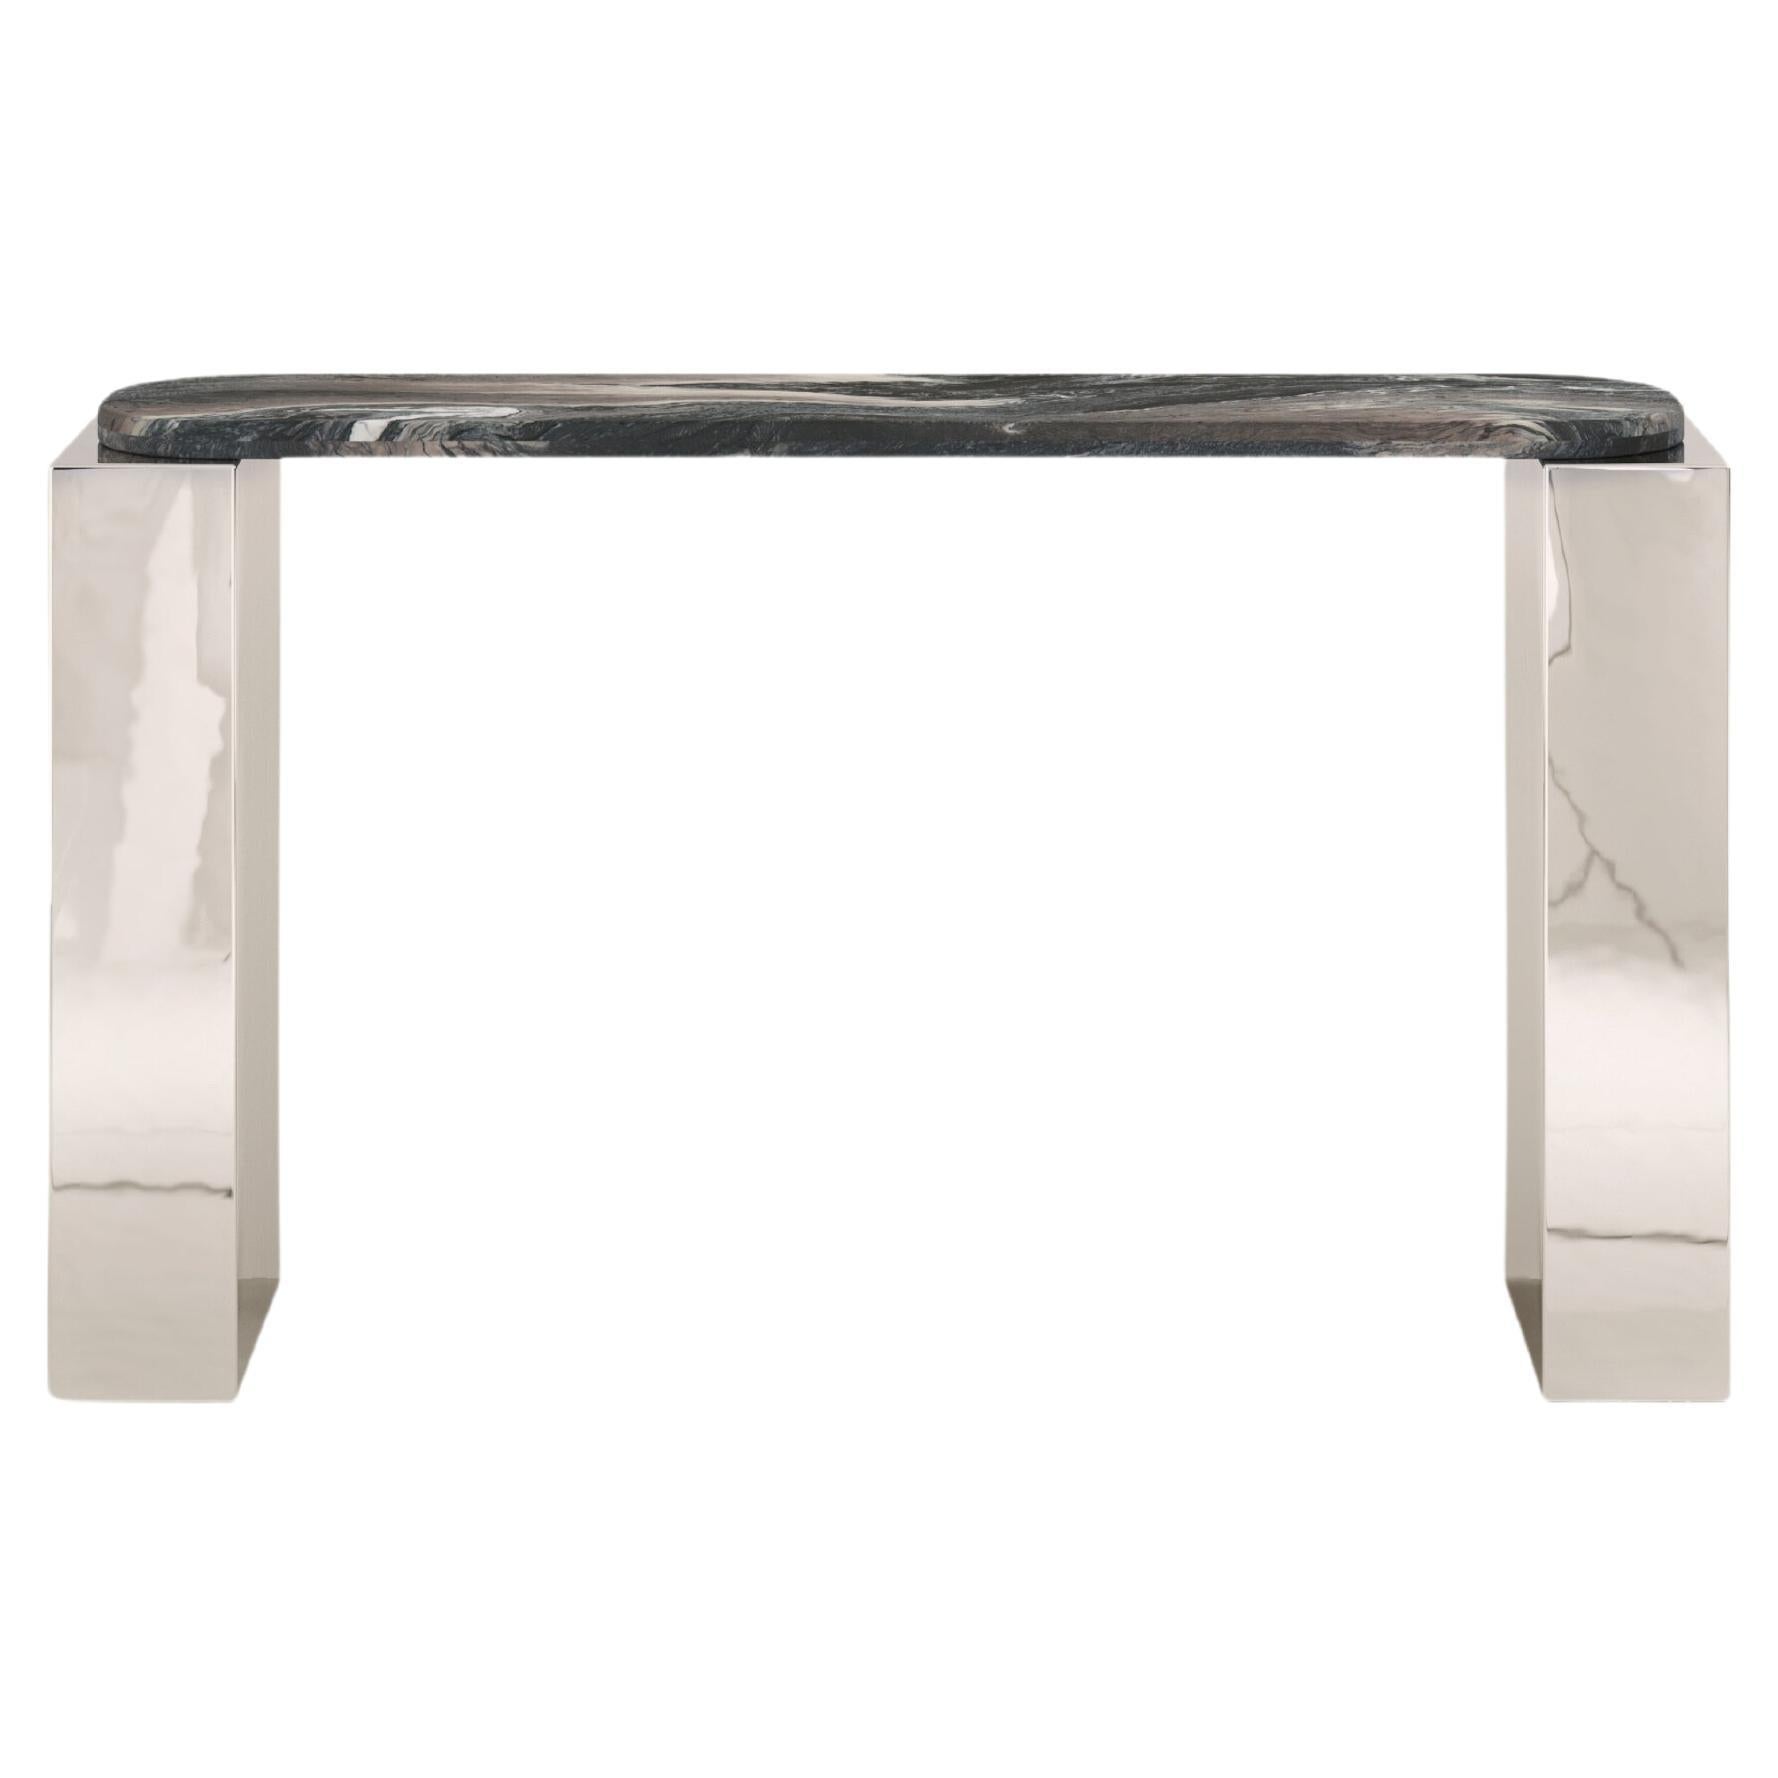 FORM(LA) Cubo Console Table 74”L x 17”W x 36”H Ondulato Marble & Chrome